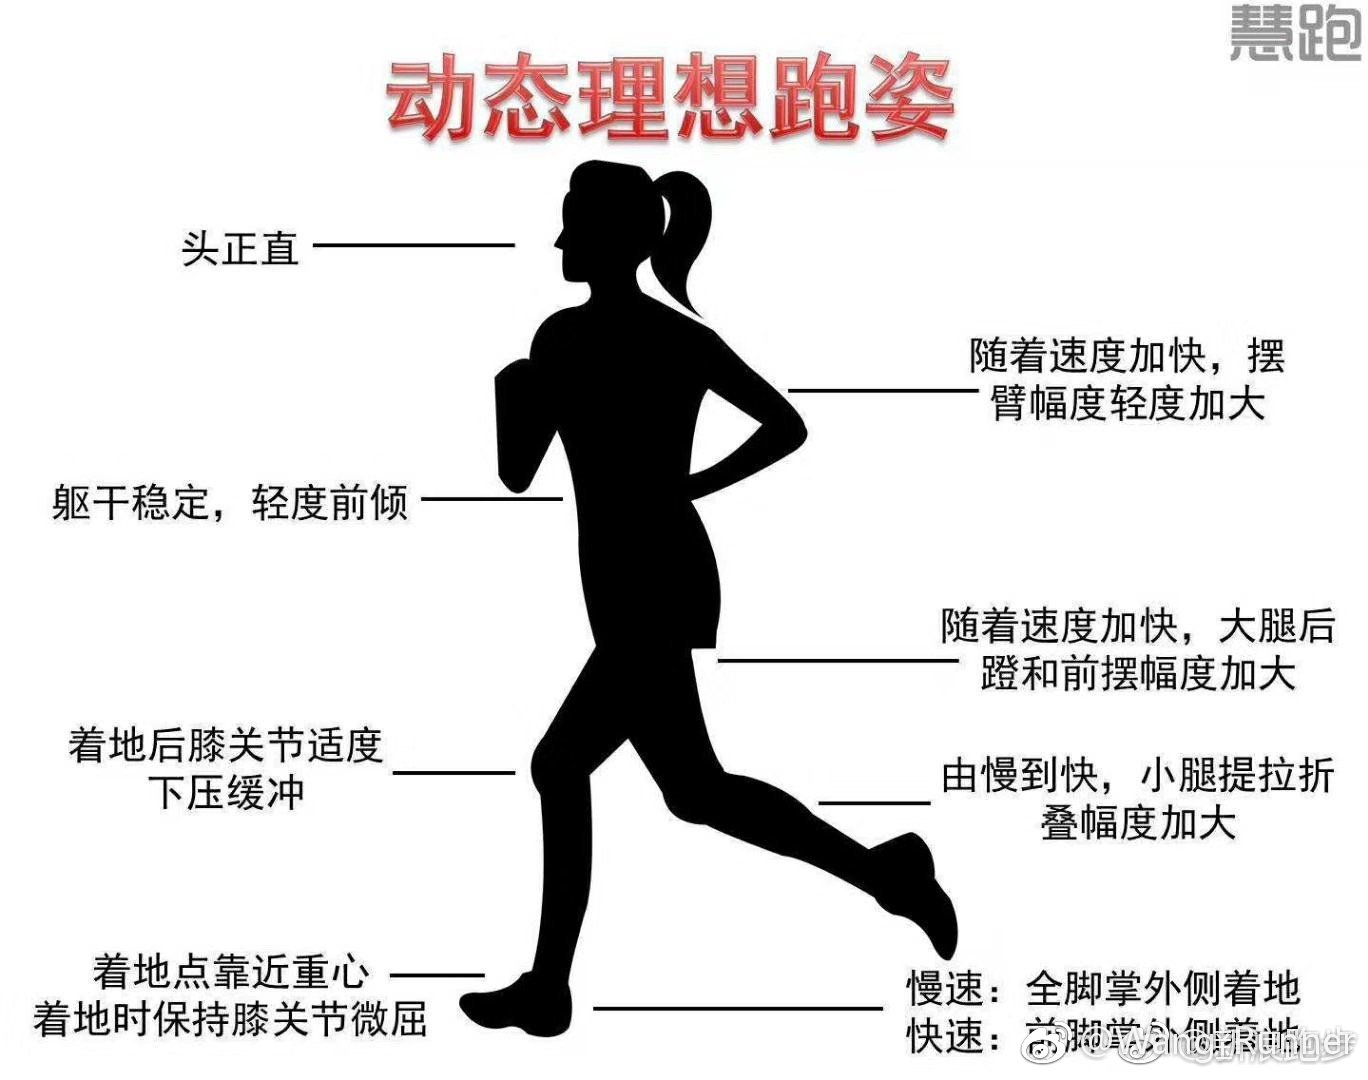 2,跑步动作要规范:曾因姿势错误导致膝盖受伤